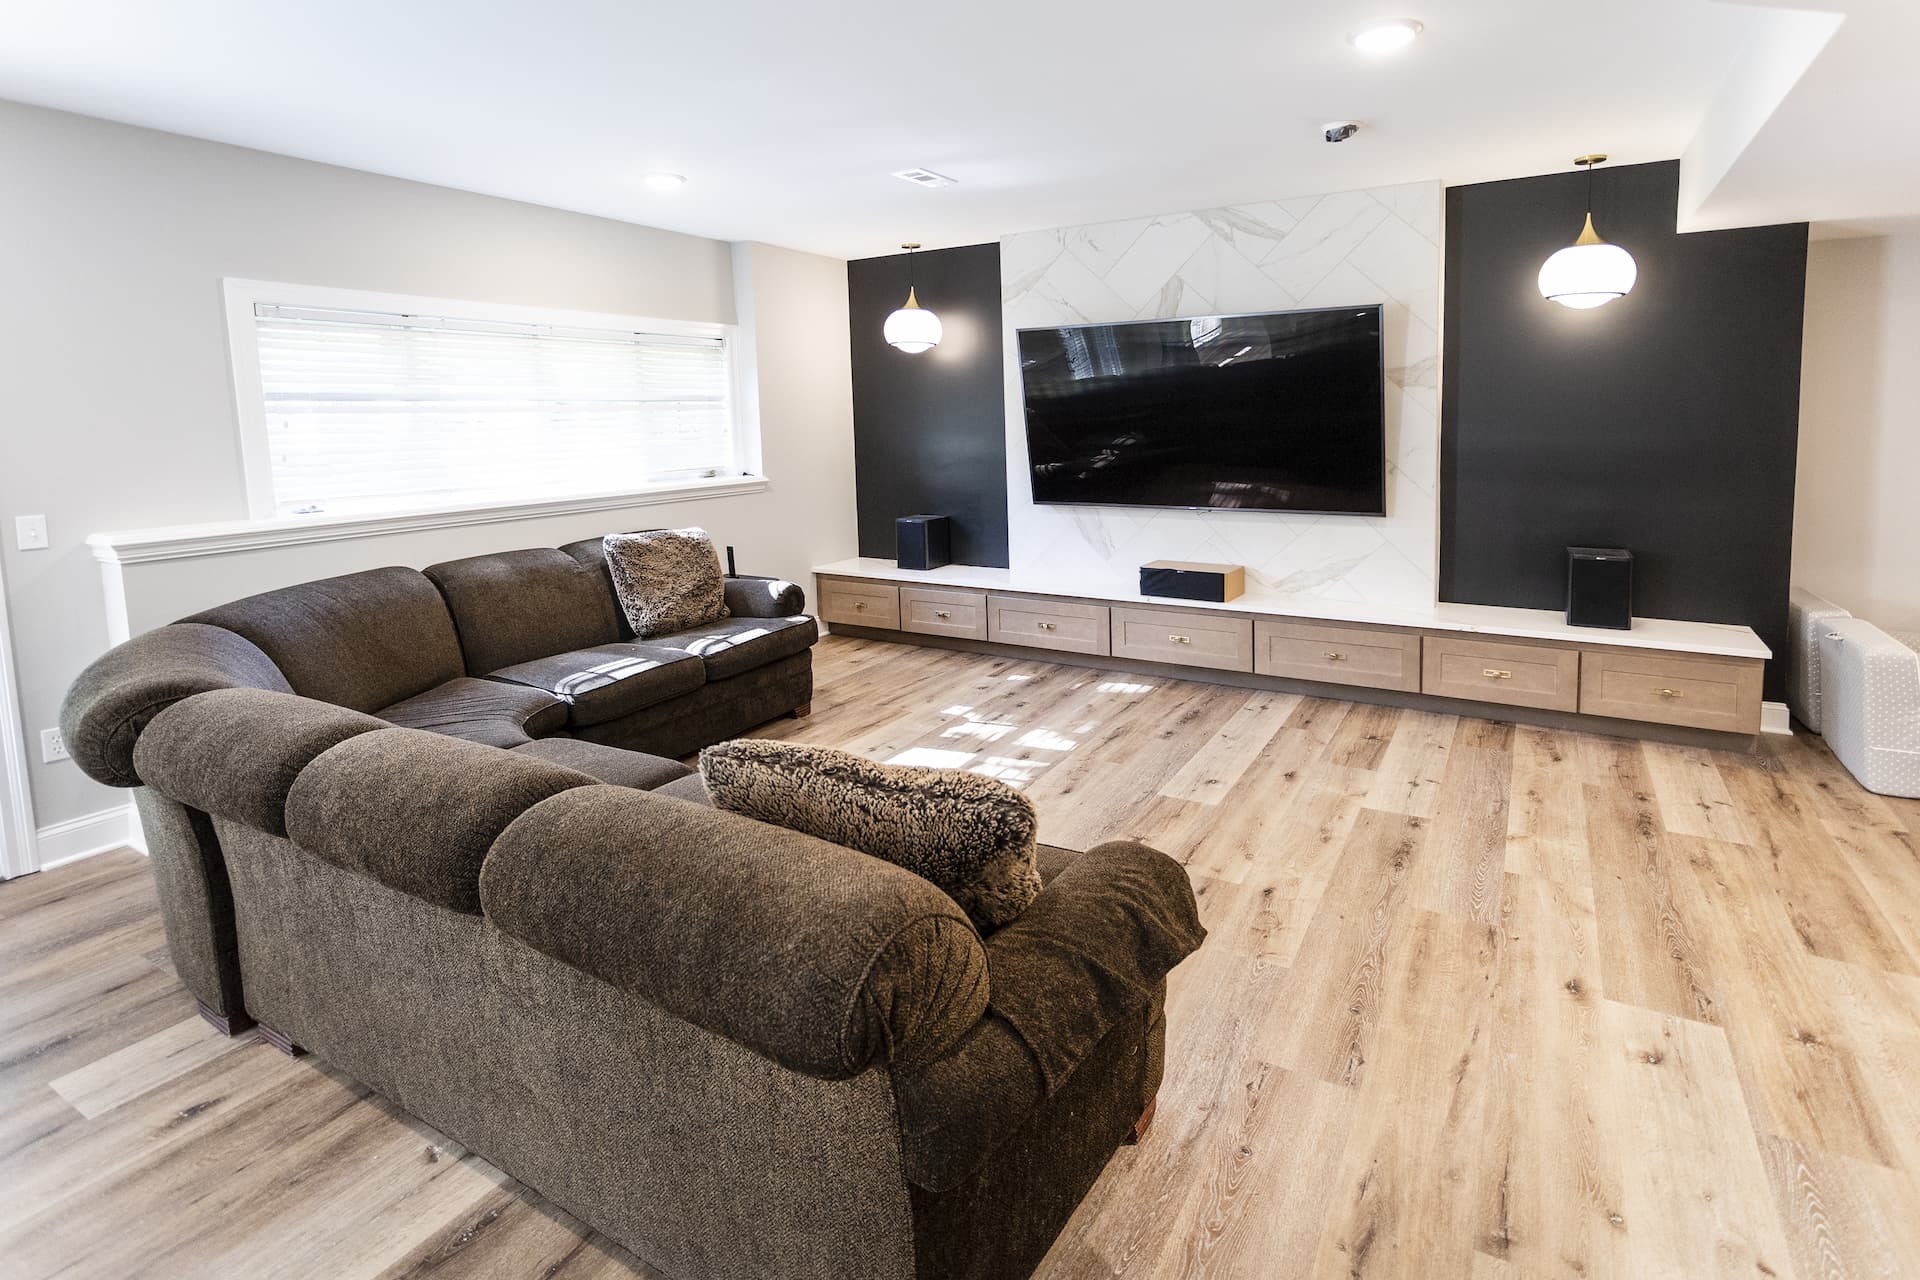 Living room design remodel